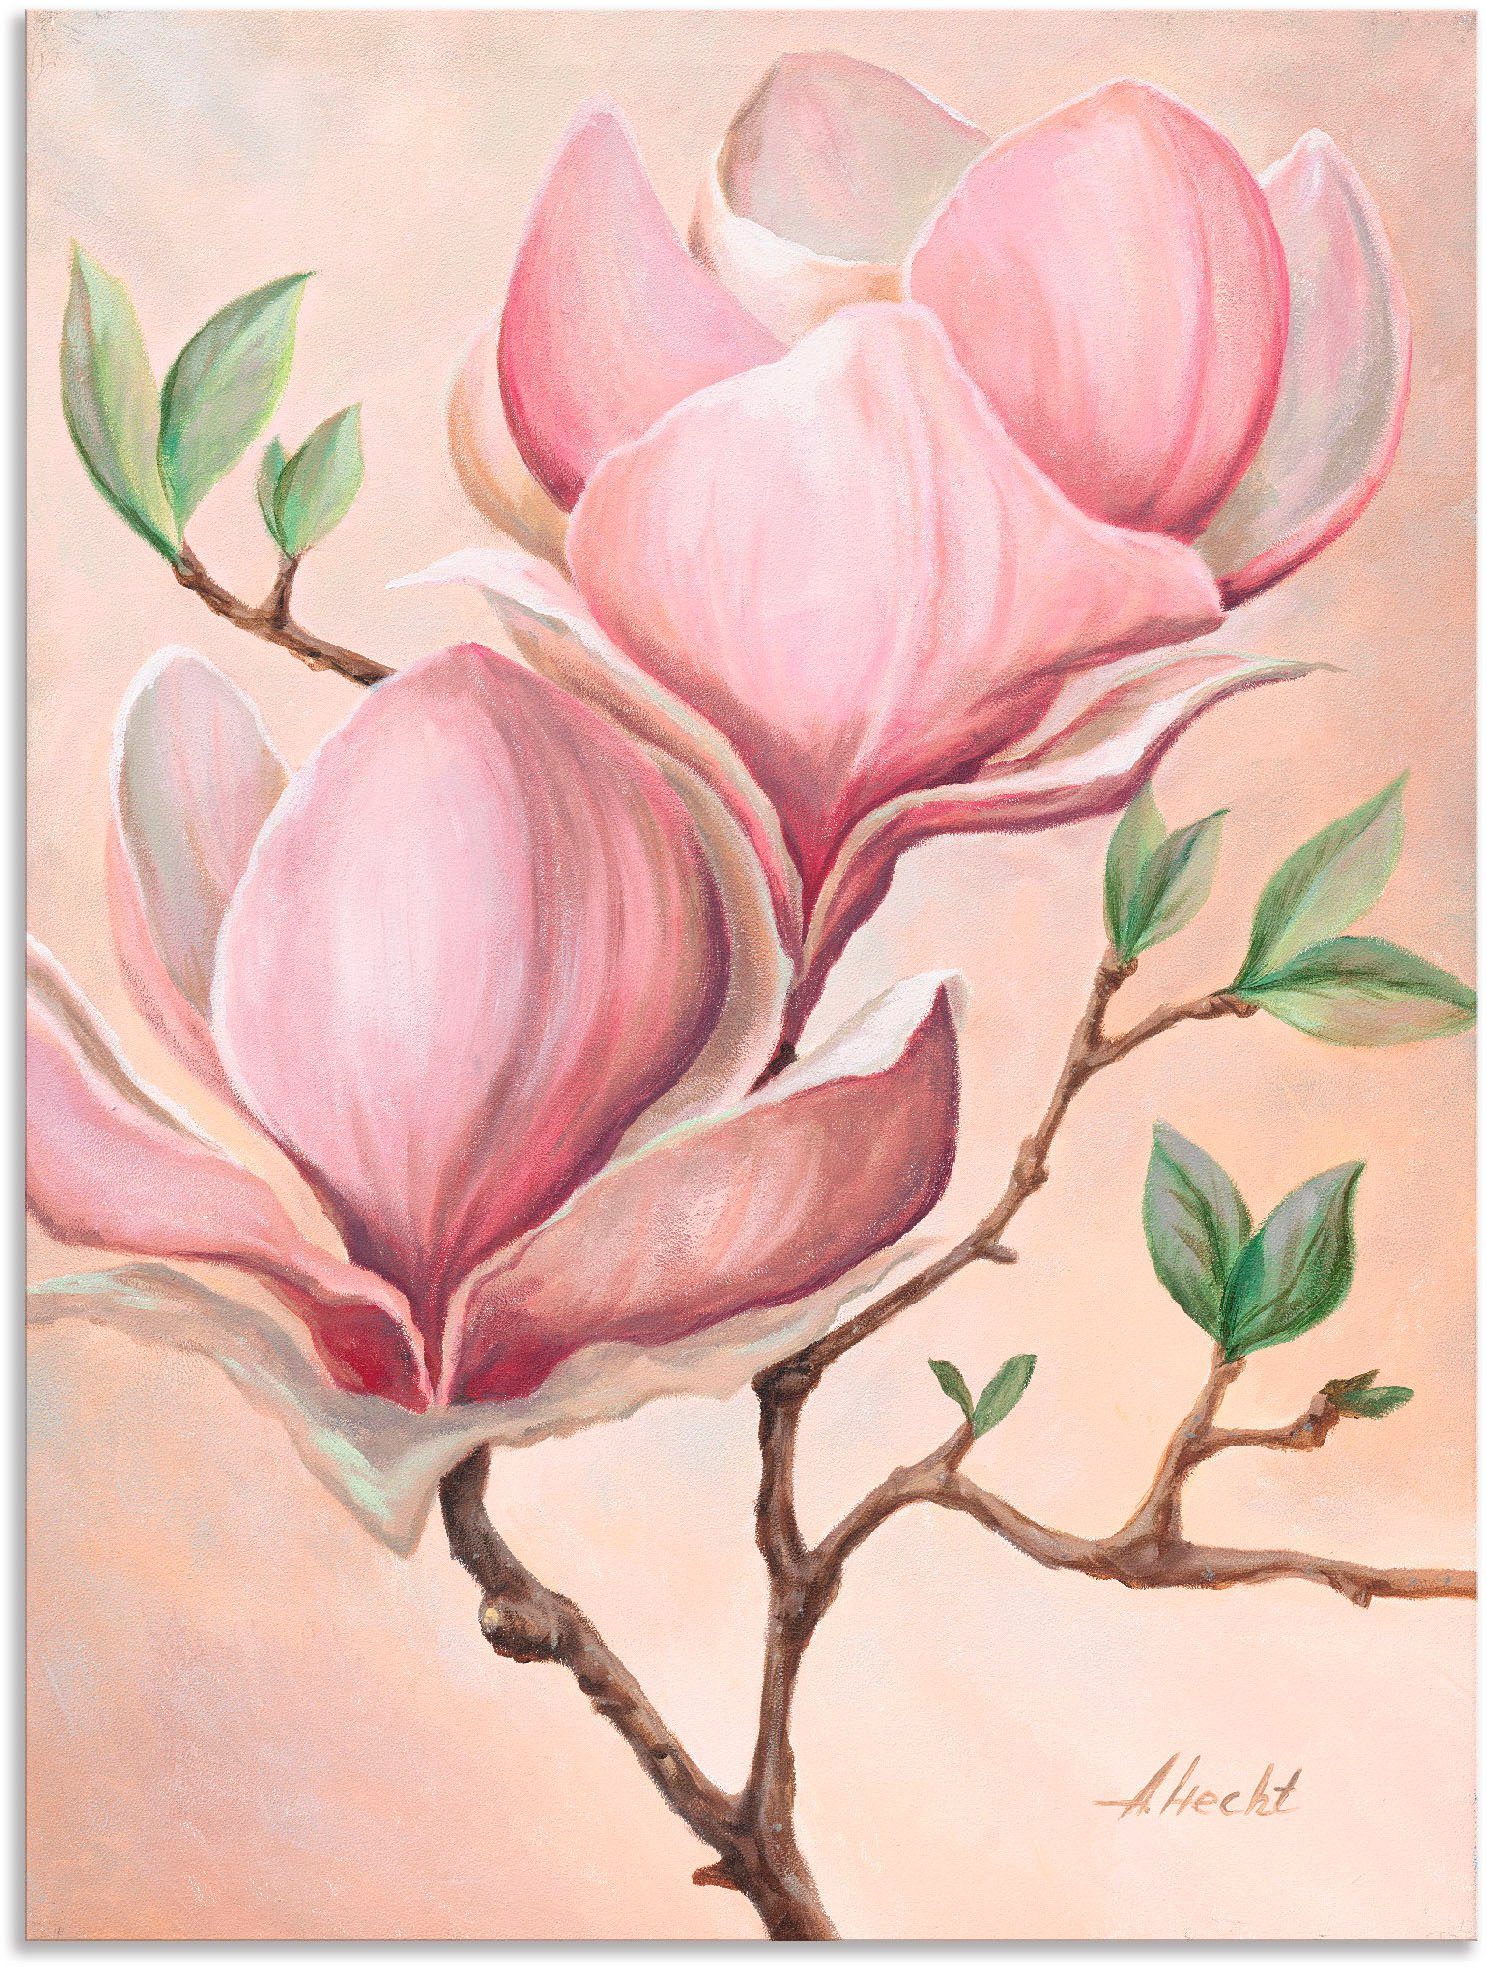 Artland Artprint Magnoliabloemen in vele afmetingen & productsoorten - artprint van aluminium / artprint voor buiten, artprint op linnen, poster, muursticker / wandfolie ook geschi